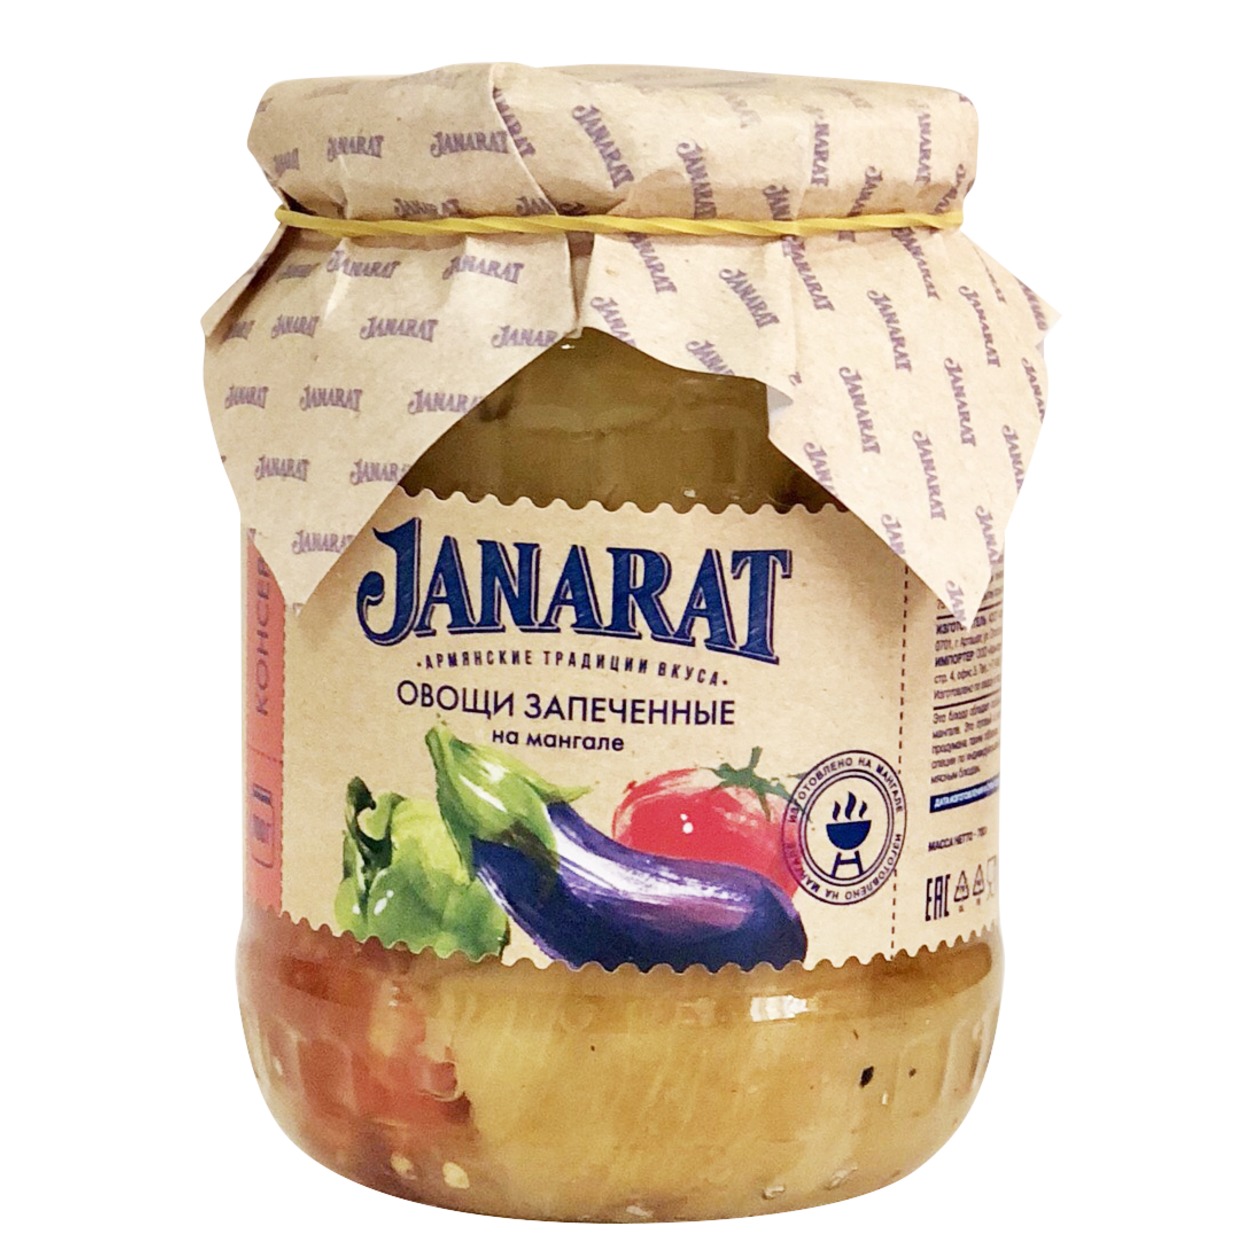 JANARAT Овощи запеченные на мангале 700г по акции в Пятерочке